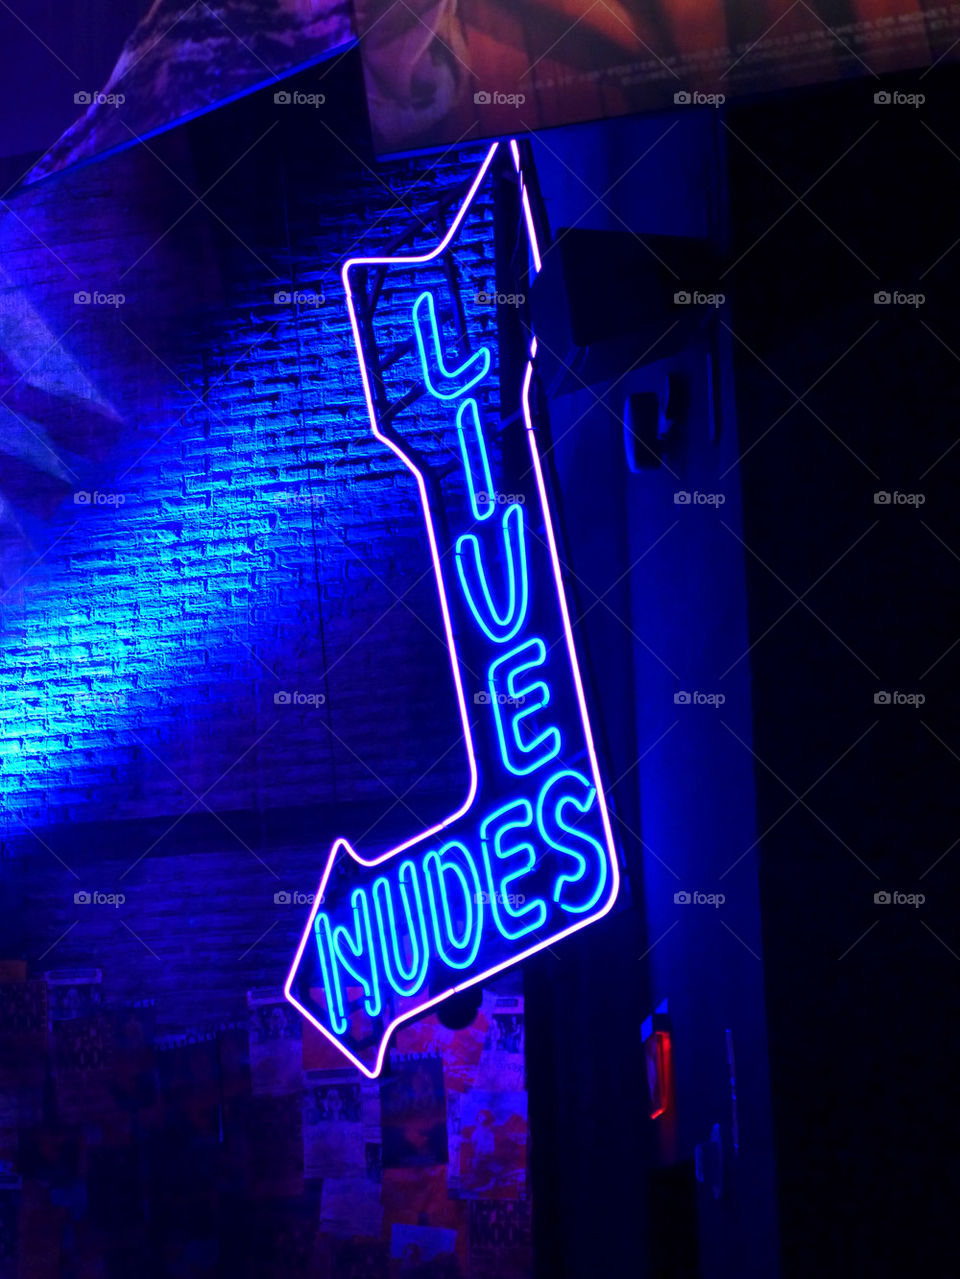 "Live Nudes" neon sign Las Vegas